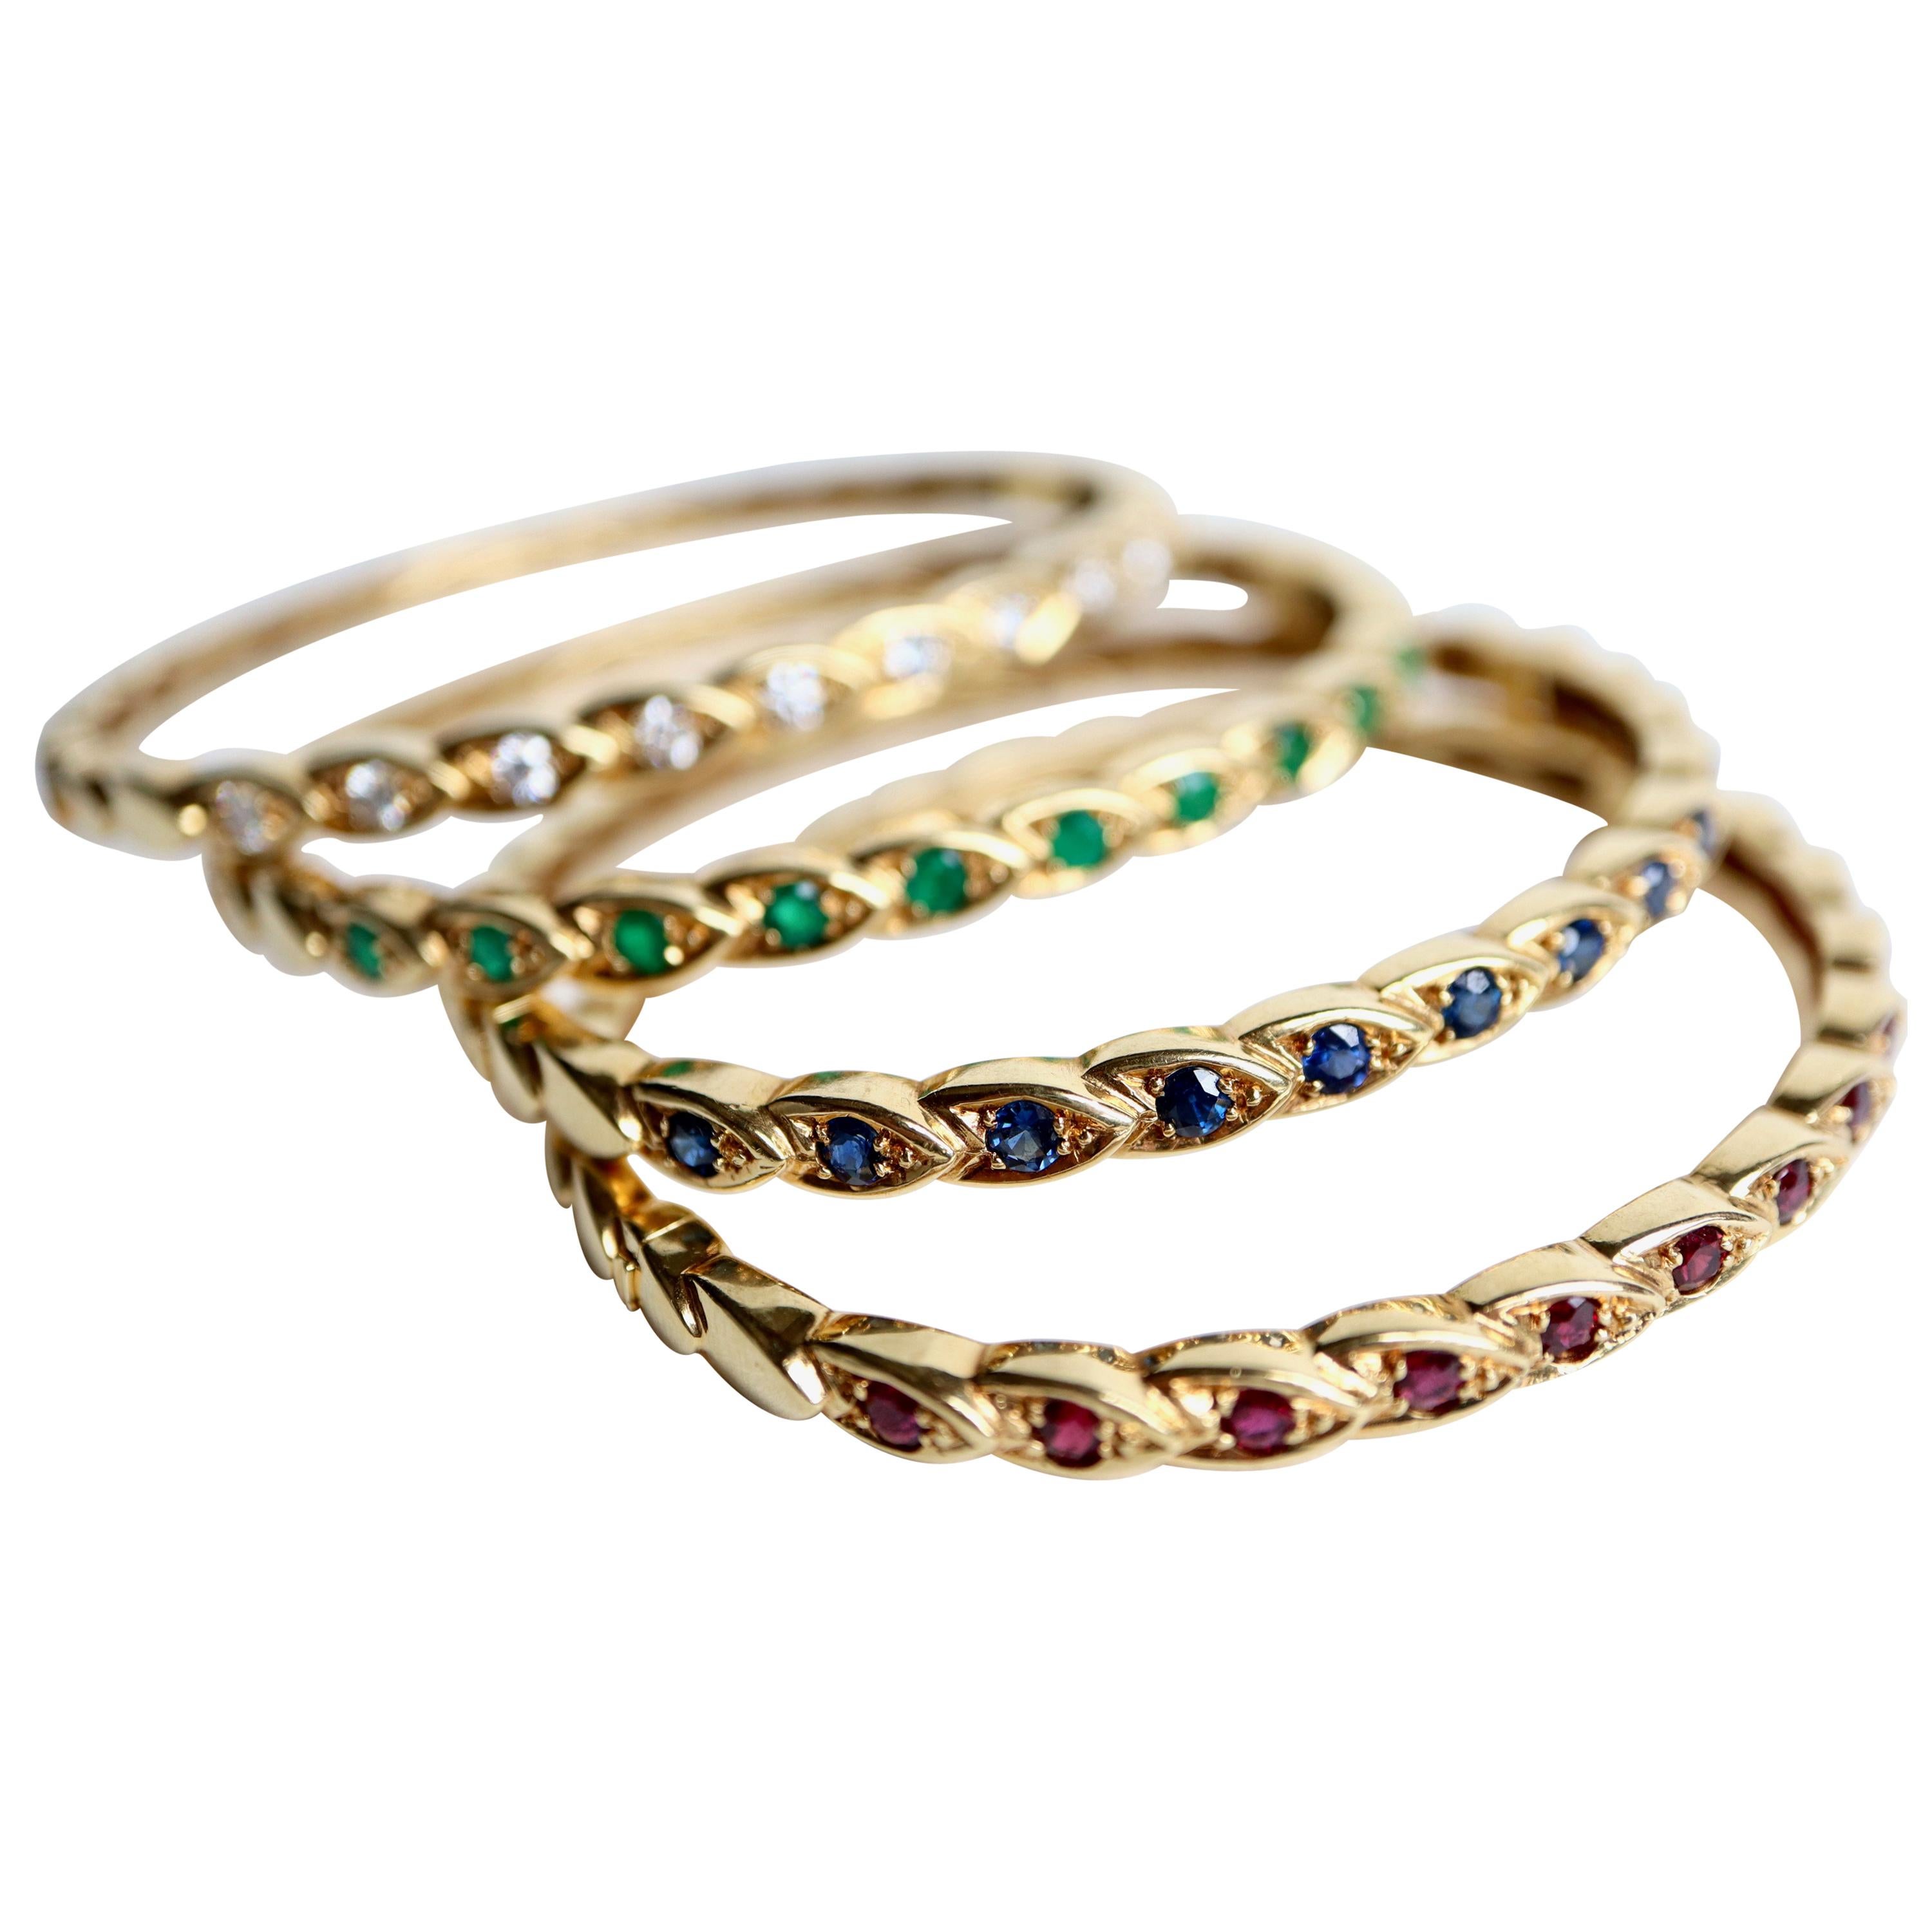 CHAUMET 4 Starre Armbänder aus Gelbgold und Edelsteinen wie Smaragd, Saphir, Rubin und Diamant. Die Armbänder bestehen aus Ähren aus Gelbgold, unter denen ein Dutzend Ähren mit Edelsteinen an der Spitze der Armbänder befestigt sind. Die Armbänder